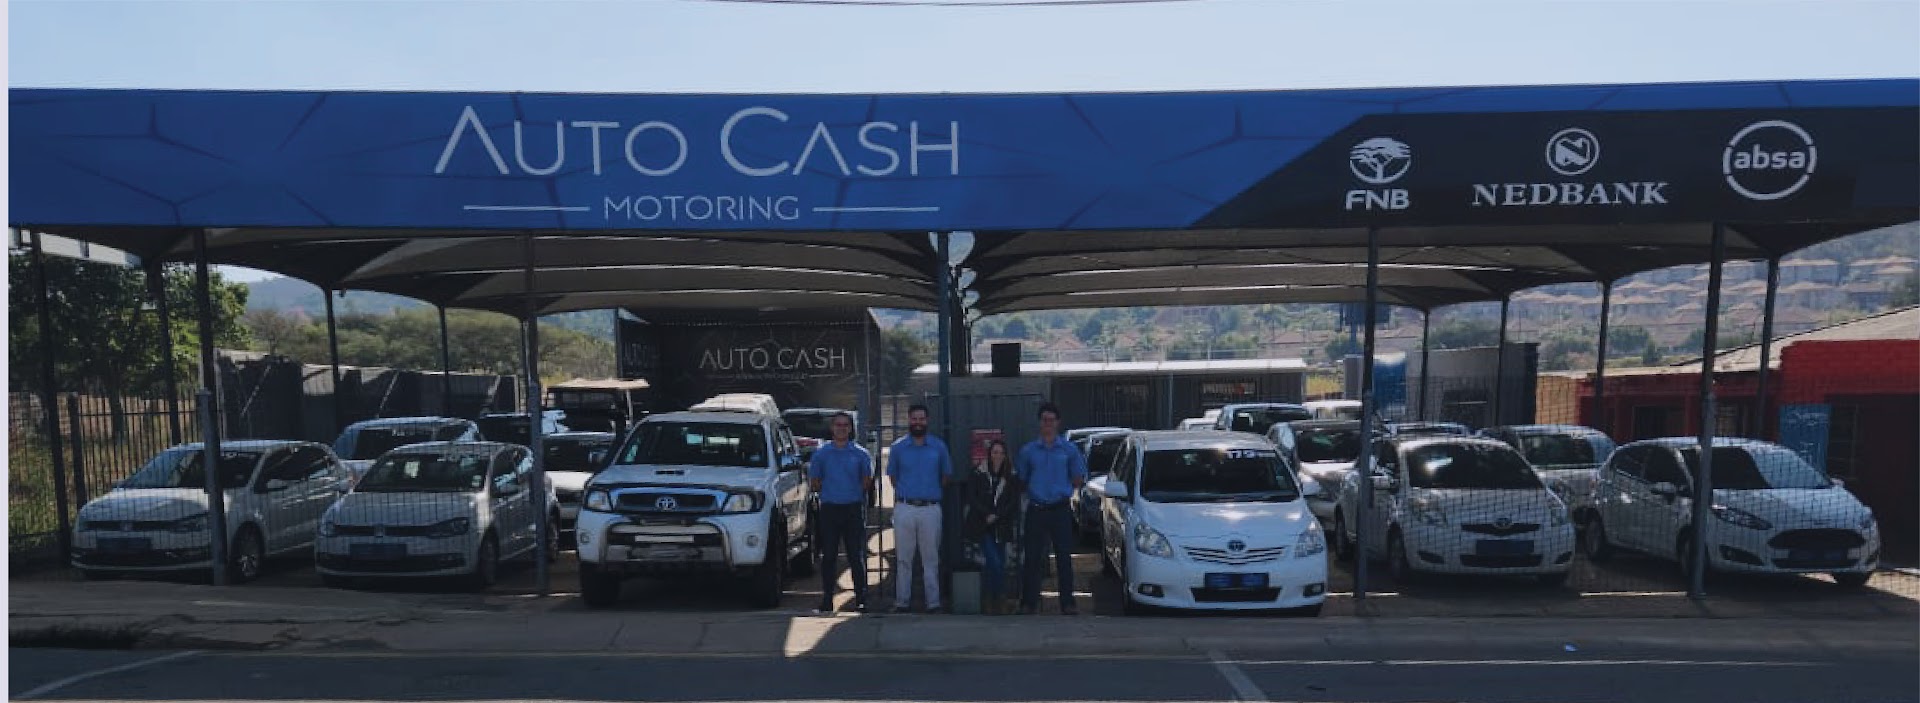 Auto Cash Motoring